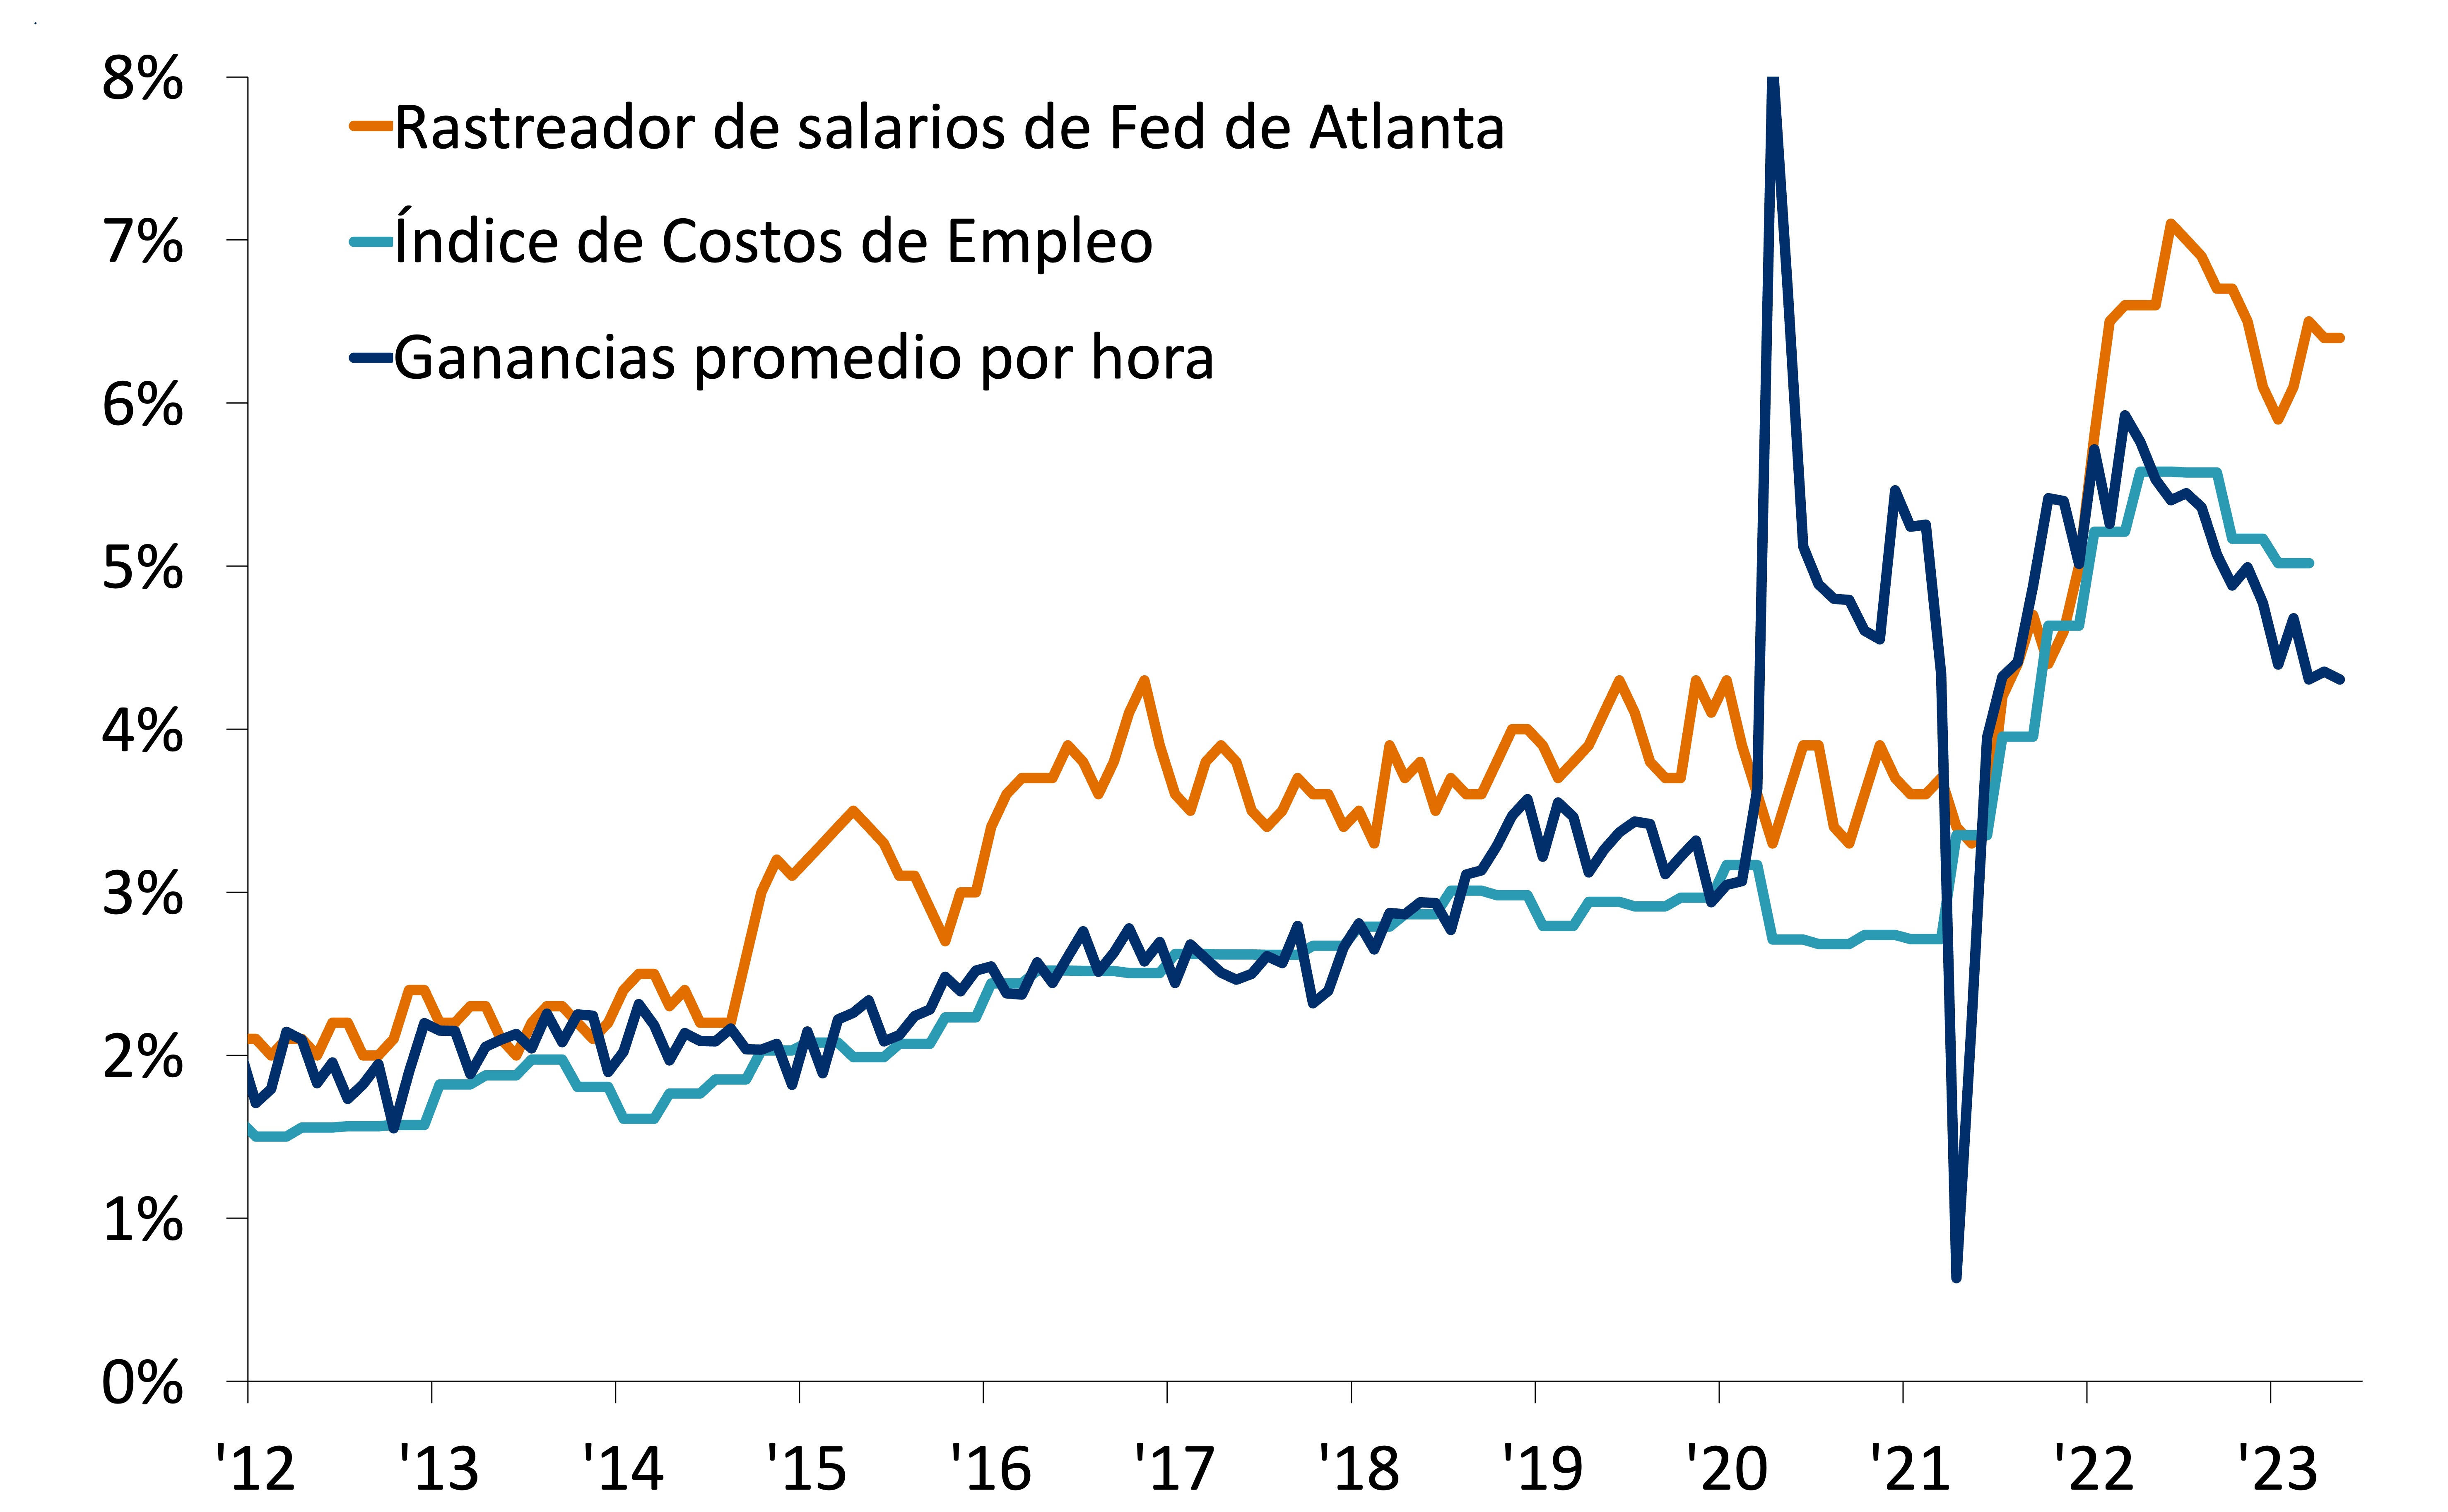 Este gráfico muestra el cambio porcentual año tras año de diferentes medidas de crecimiento salarial: el Rastreador de Crecimiento Salarial de la Reserva Federal de Atlanta, el Índice de Costos de Empleo y las ganancias promedio por hora.